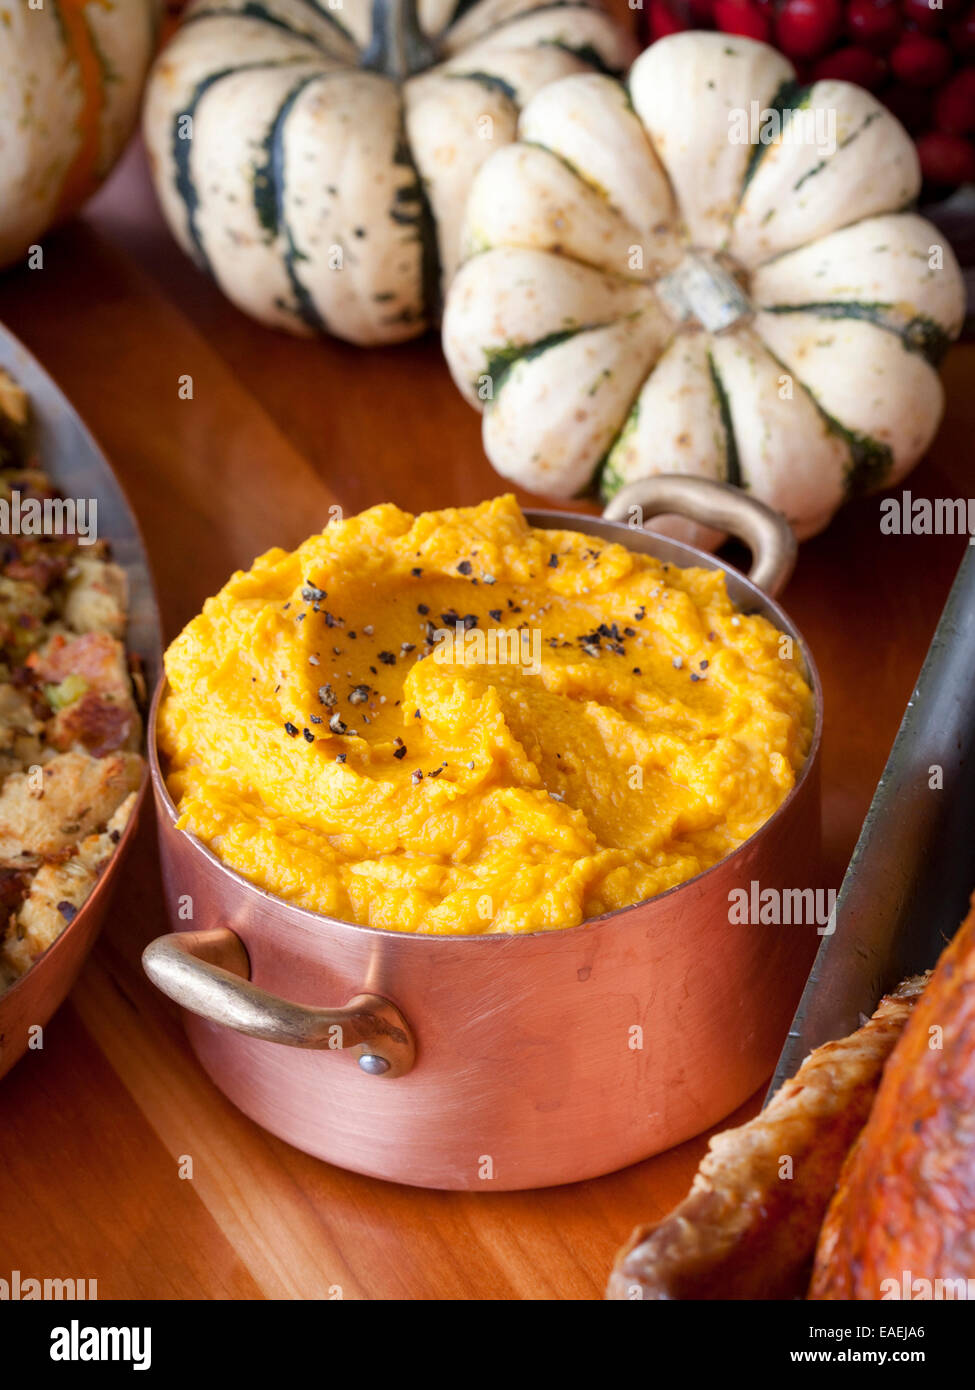 11-7-2013, New York, NY Le Chef Tom Colicchio prépare un repas de Thanksgiving, y compris des patates douces, à son restuarant Kraft. Banque D'Images